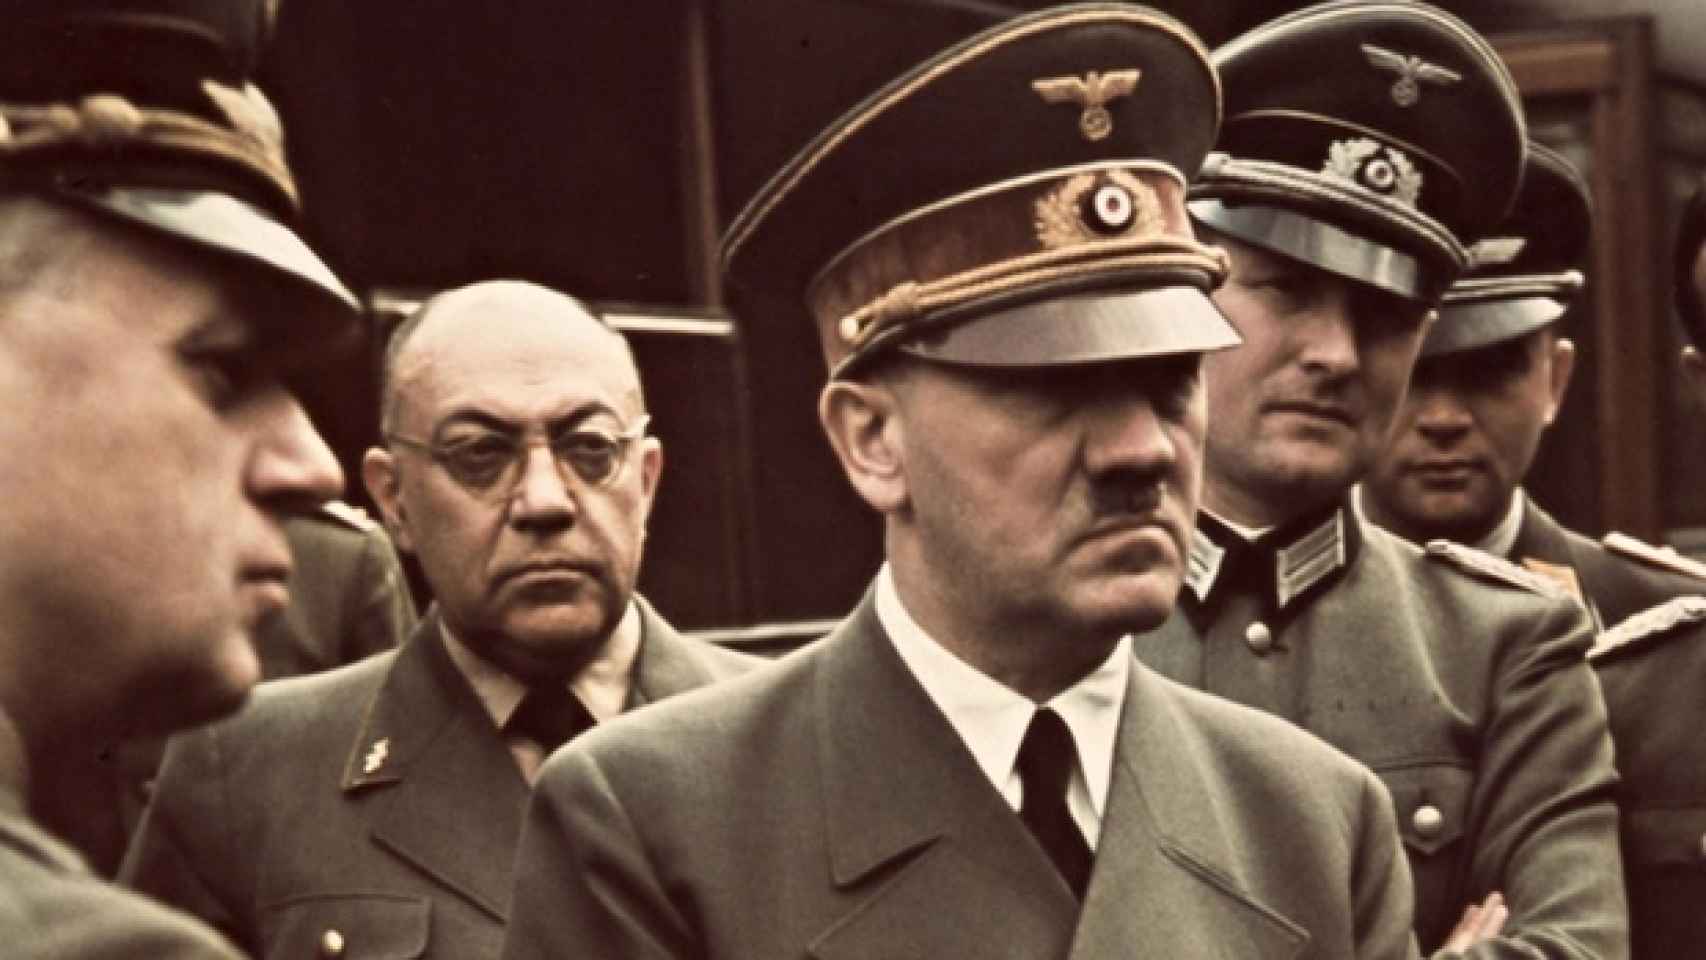 Theodore Moller, con gafas, justo detrás de Adolf Hitler.